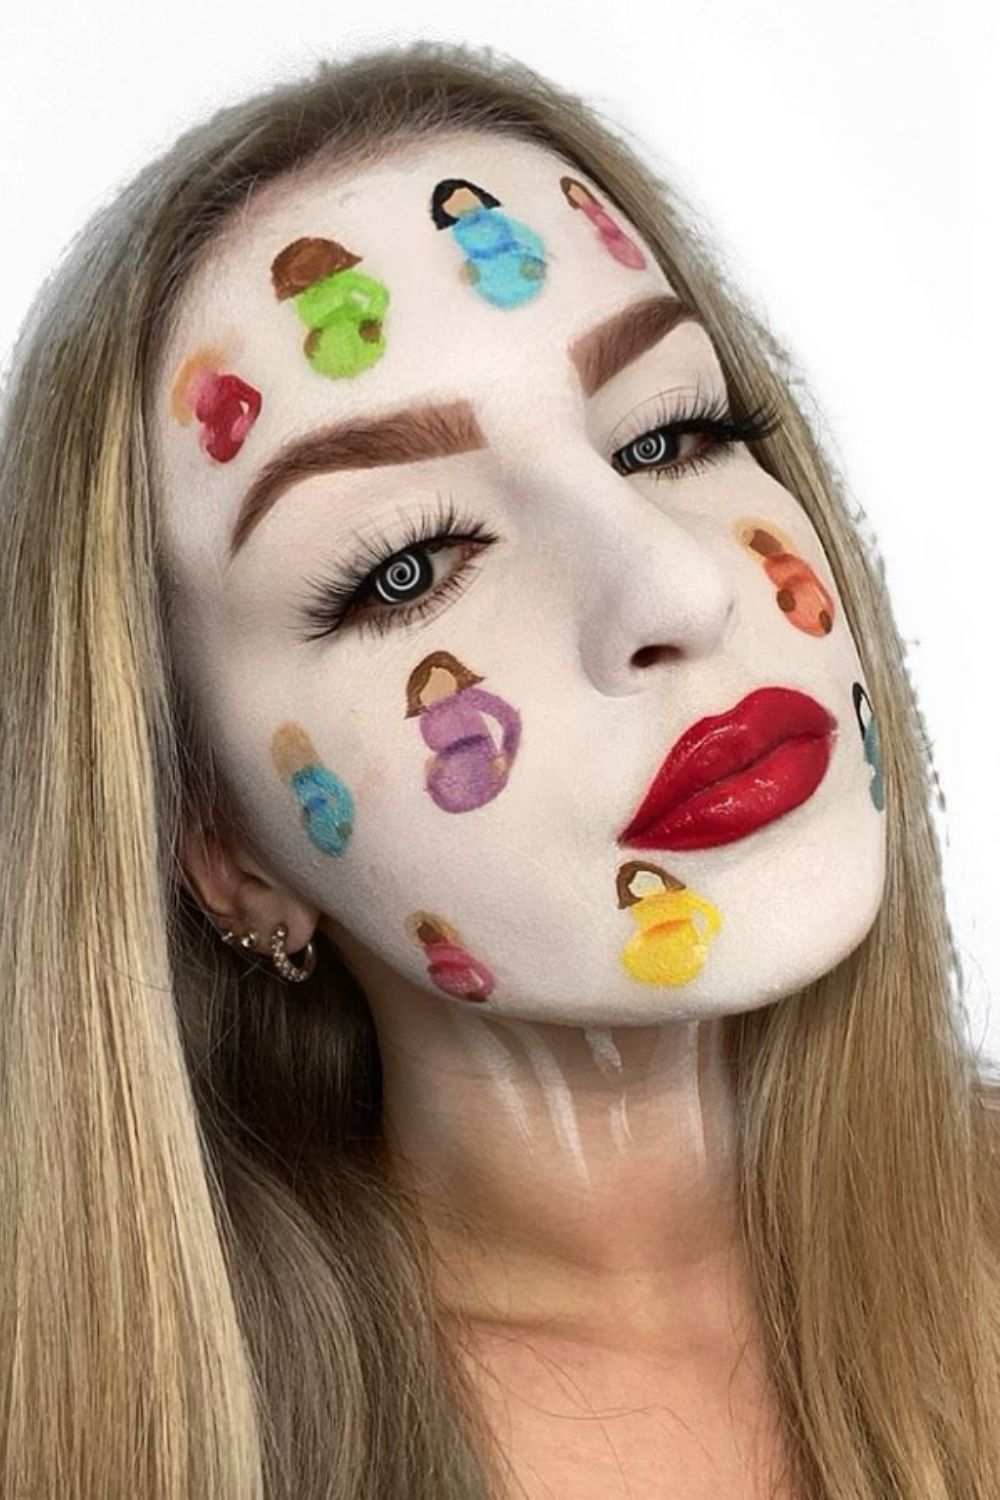 Unique makeup art